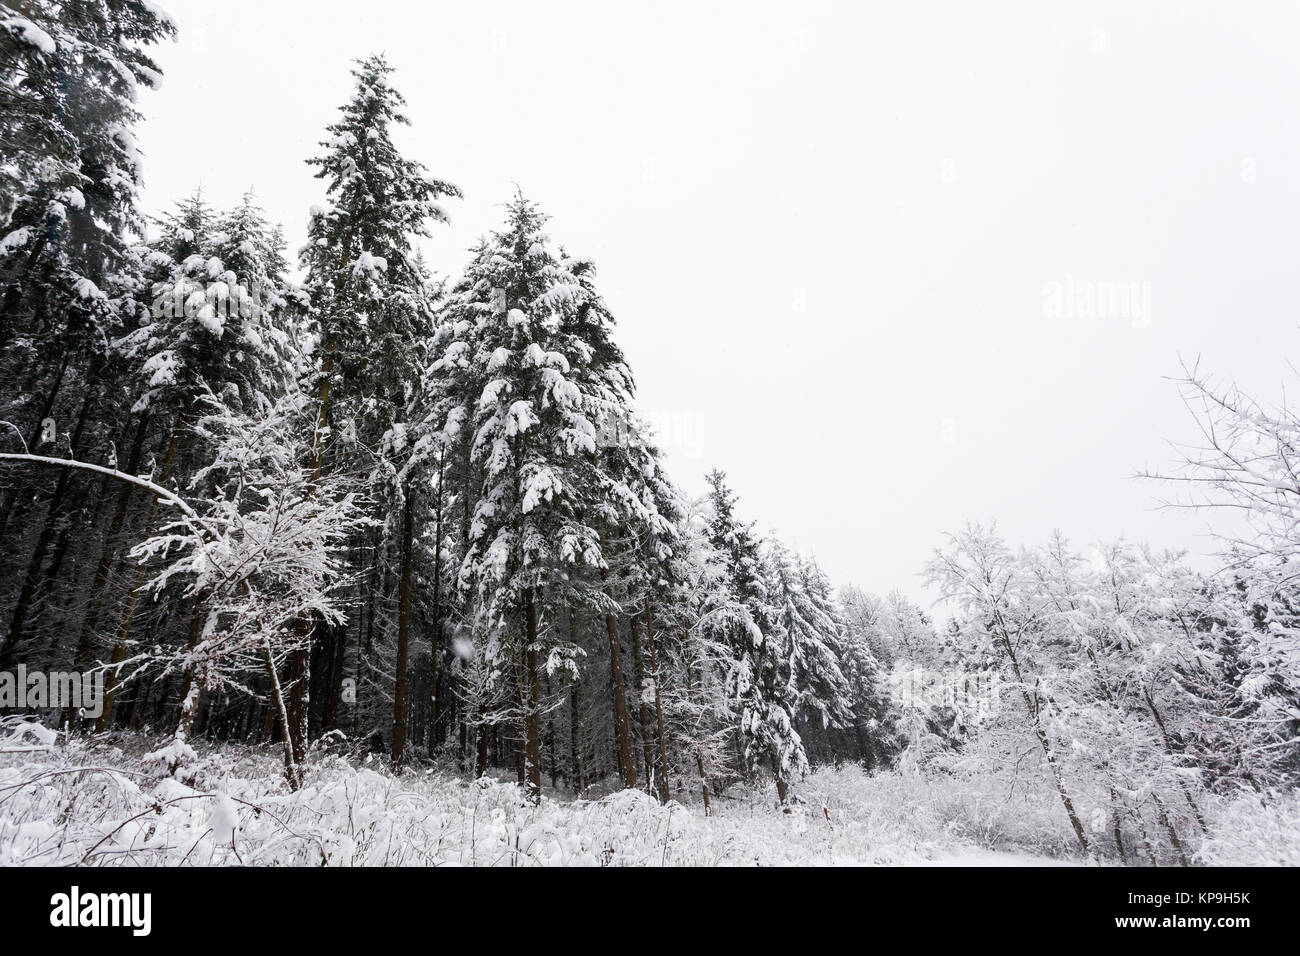 Bäume mit frischem Schnee im Winter Wald. Weihnachten und neues Jahr Hintergrund Stockfoto